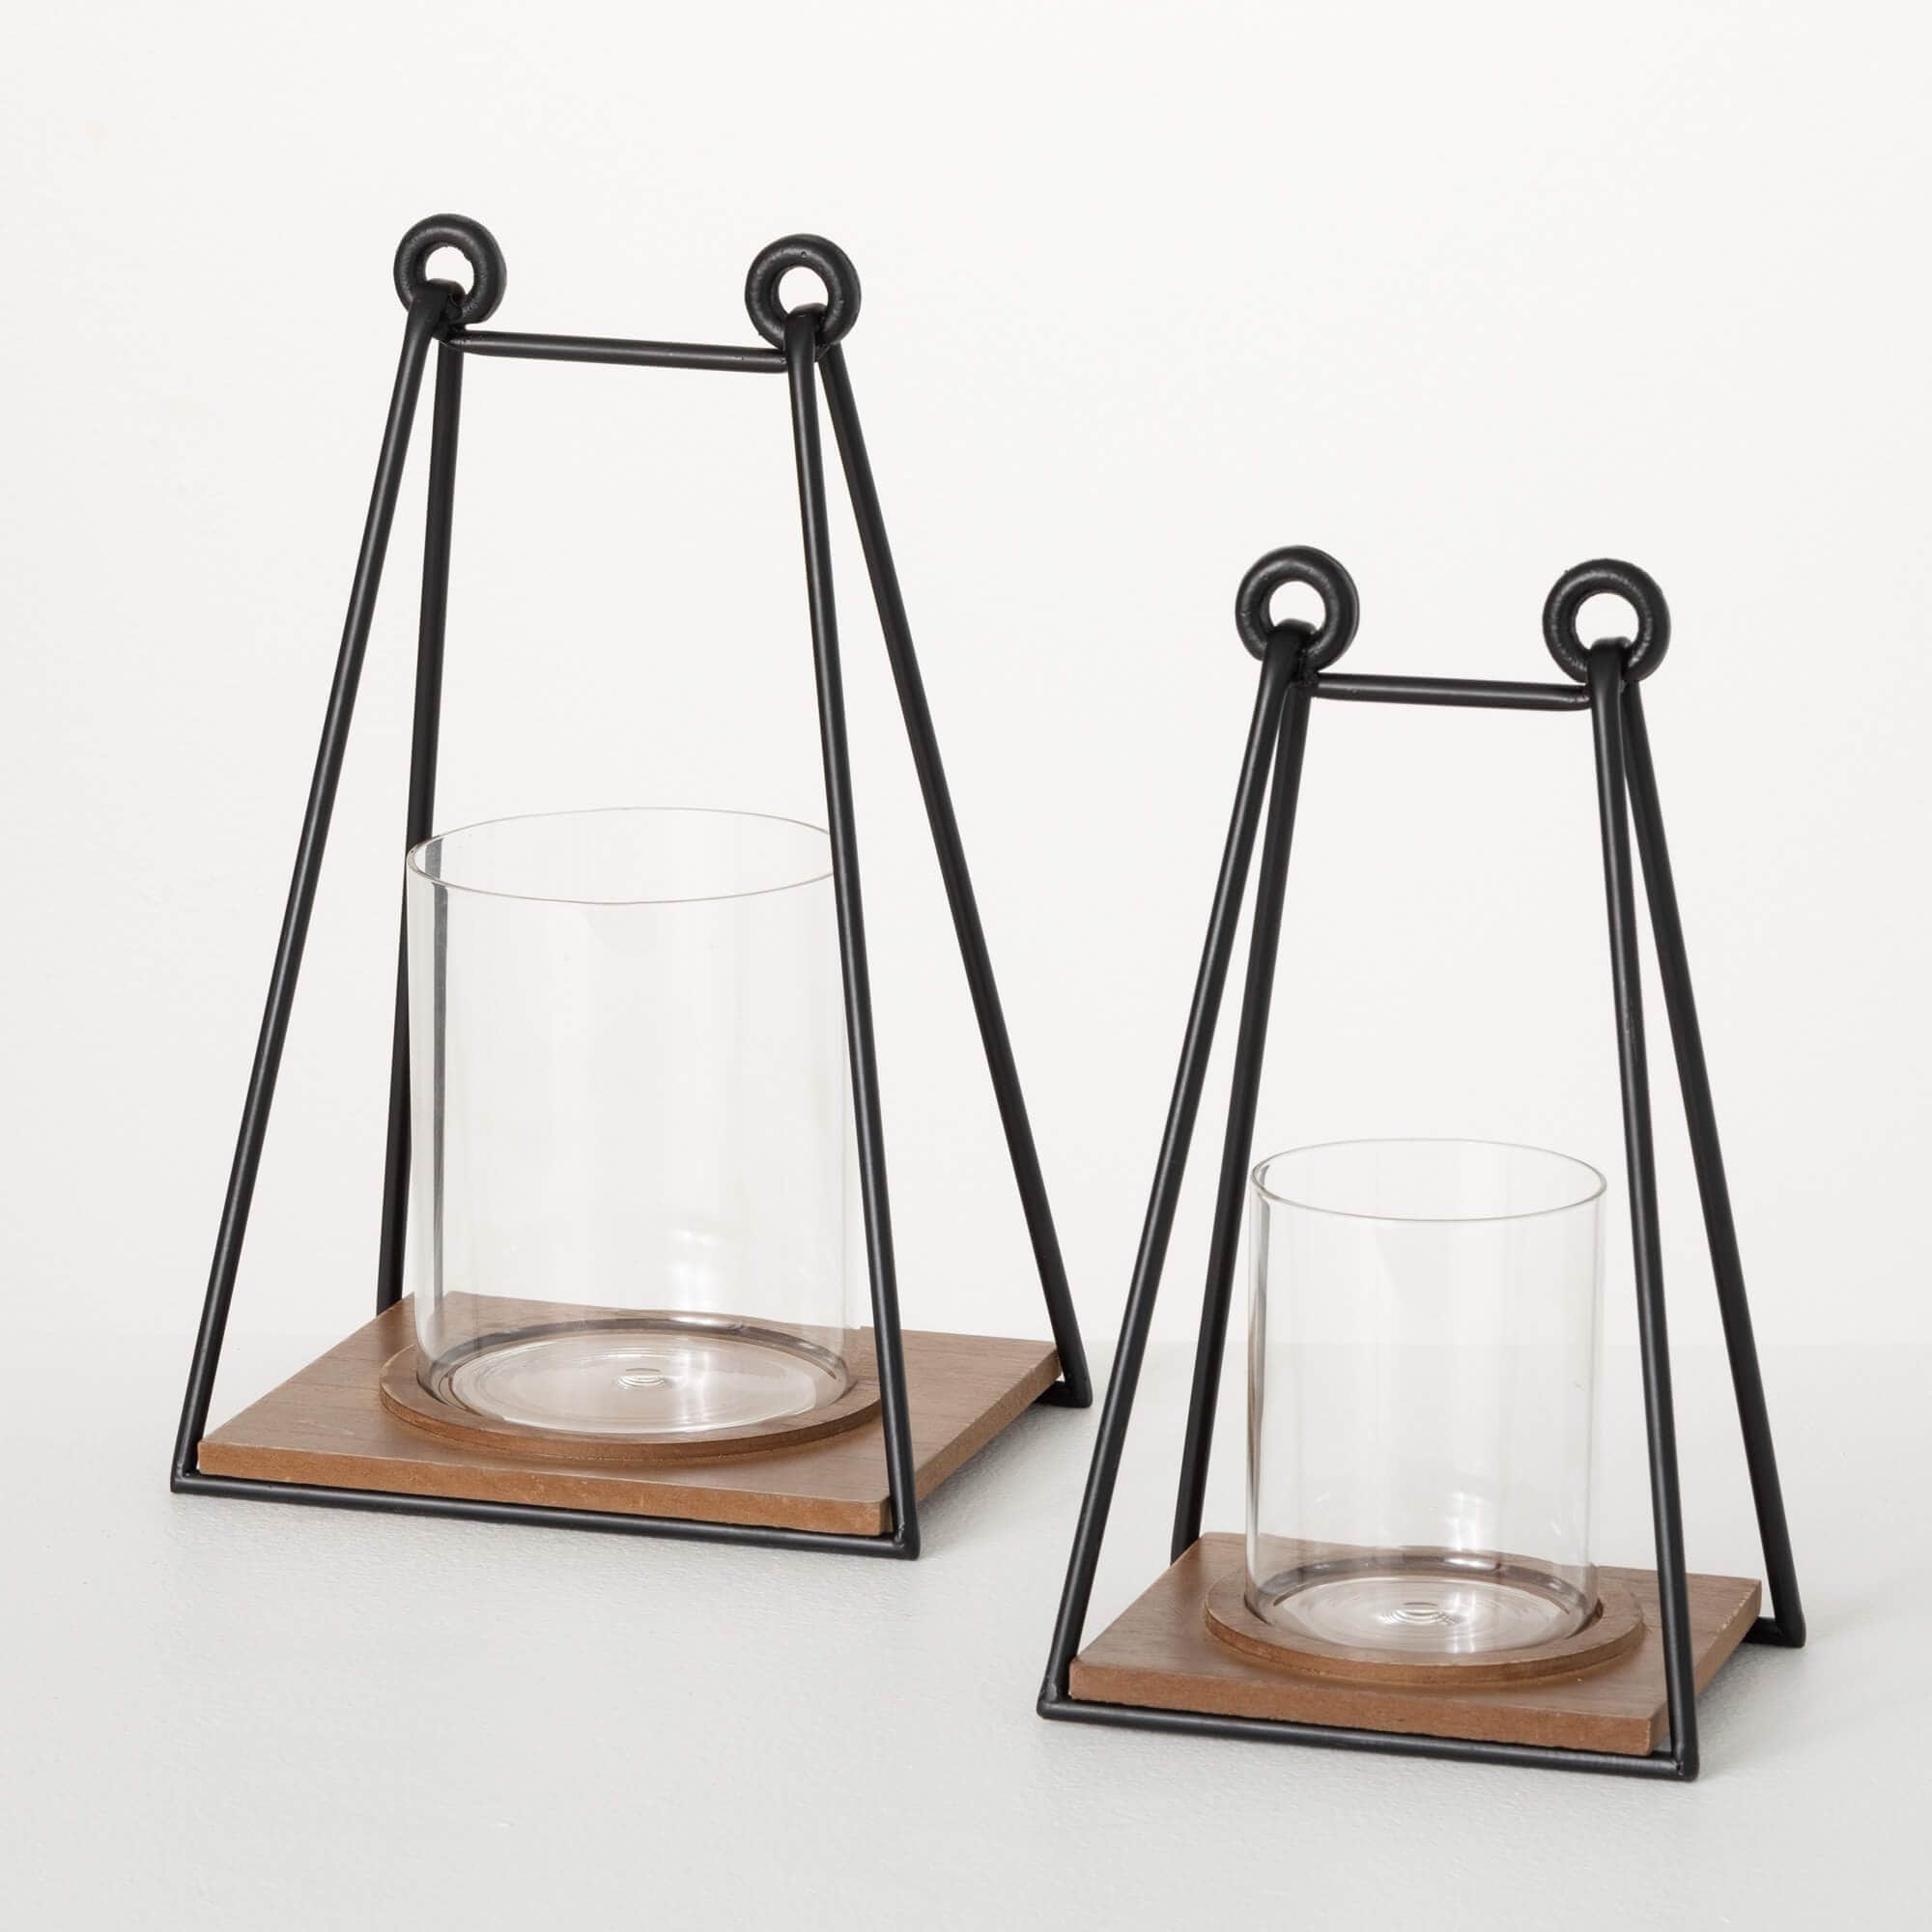 Triangular Wire Frame Lanterns Elevate Home Decor - Lanterns